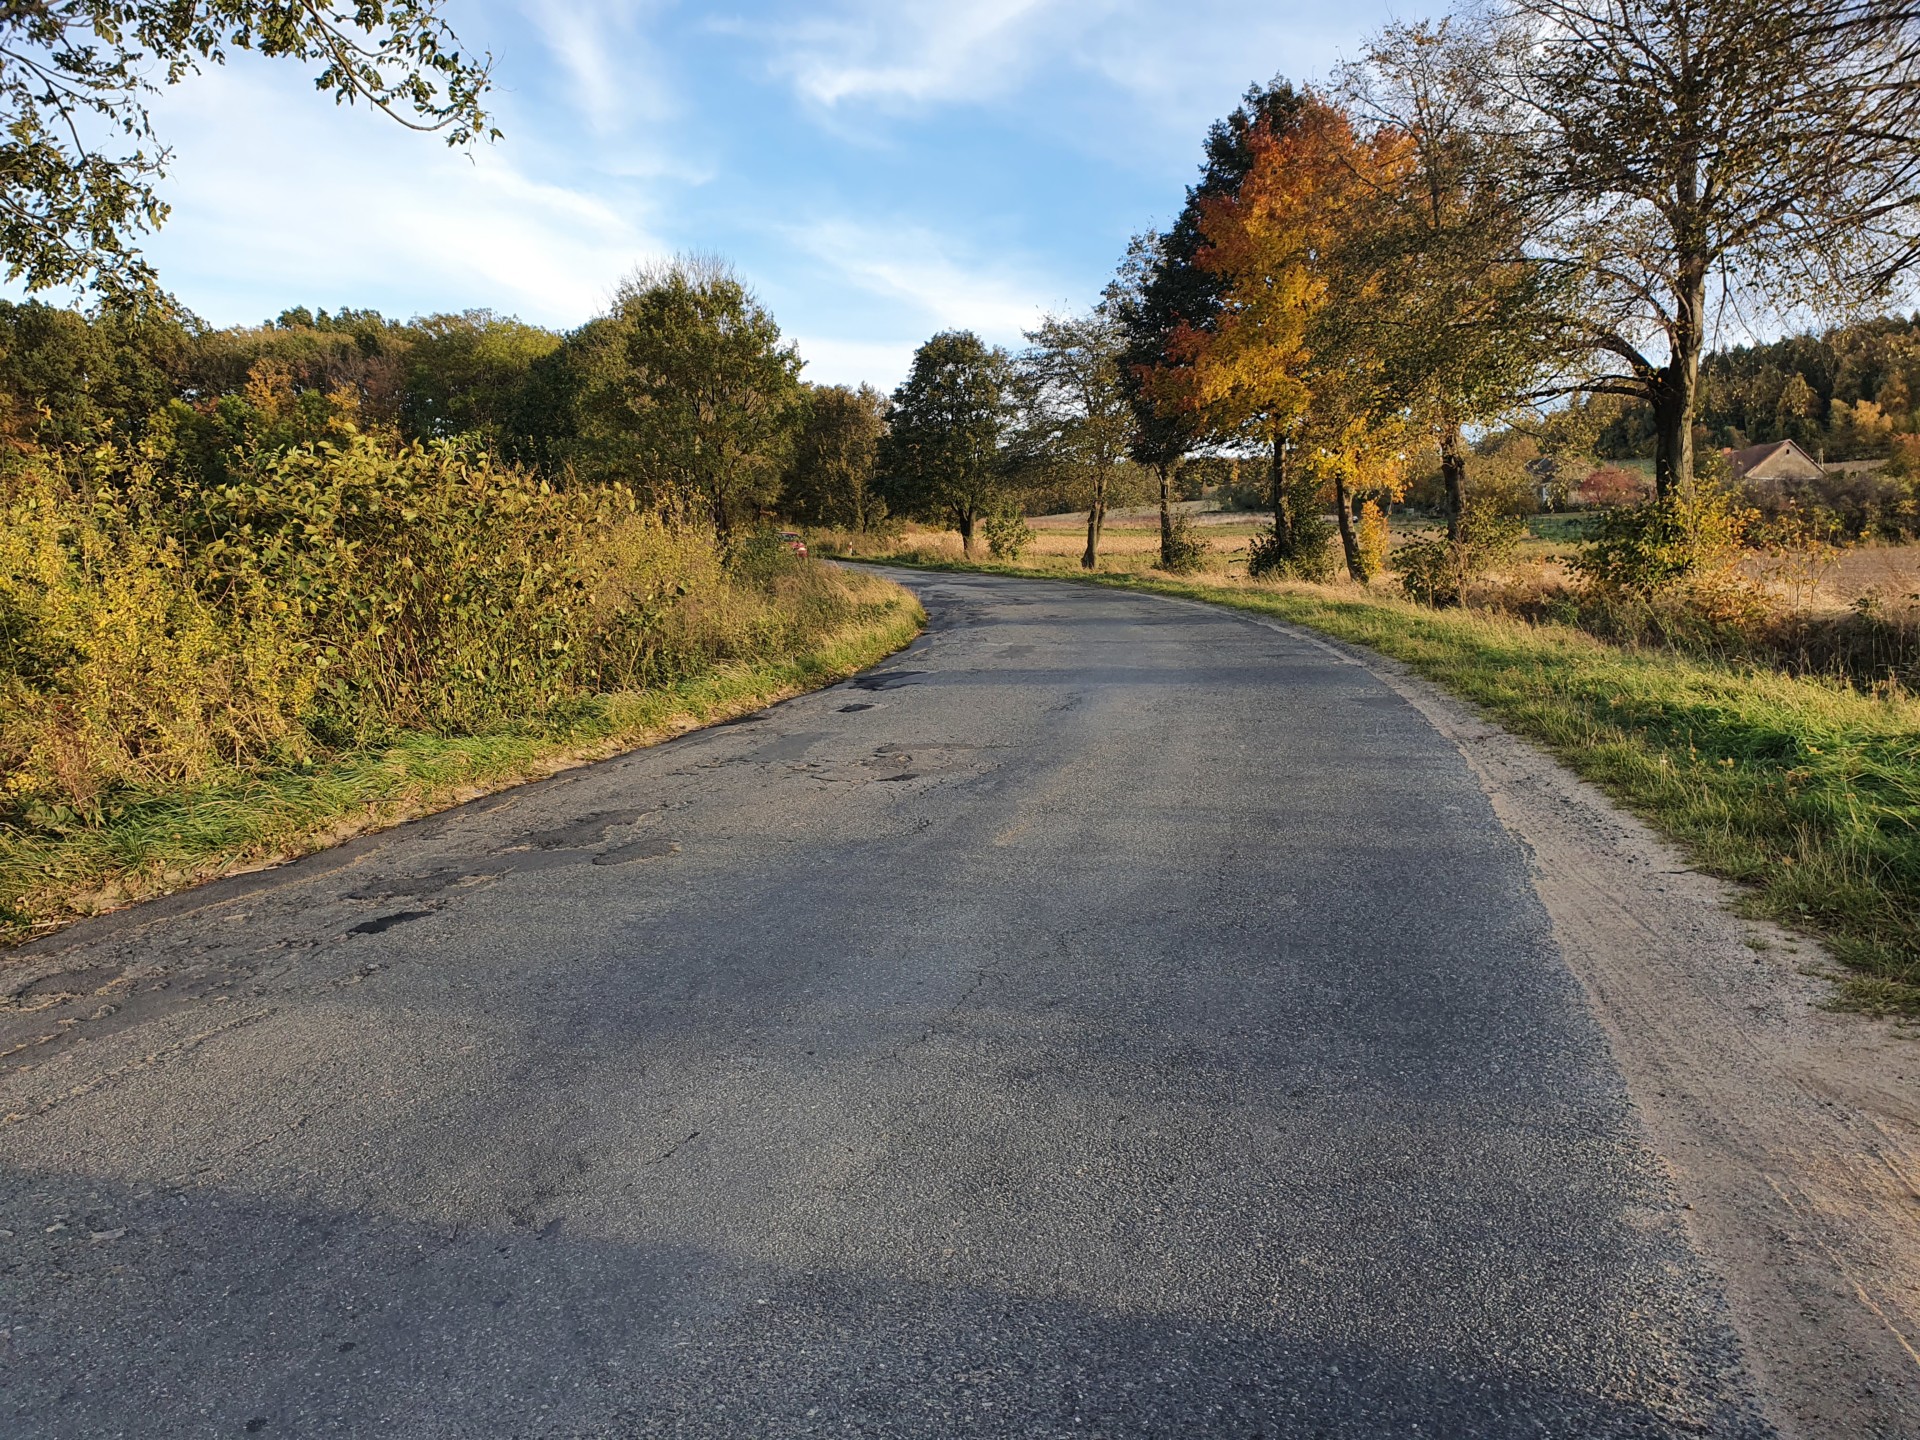 Wąska dziurawa droga asfaltowa. Zielone zarośnięte pobocza, a po prawej stronie drzewa